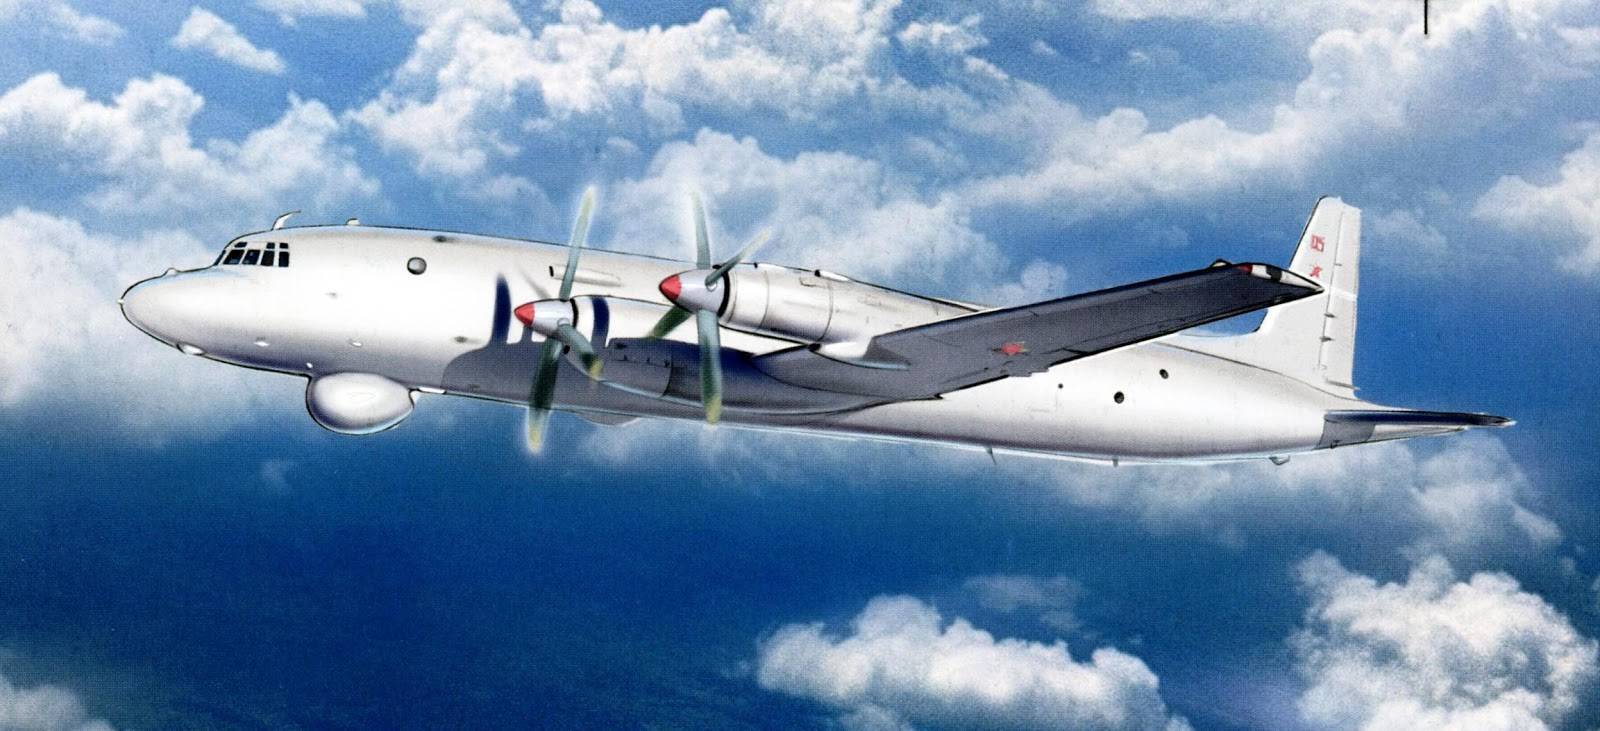 Противолодочный самолет ил-38 — обзор и летно-технические характеристики